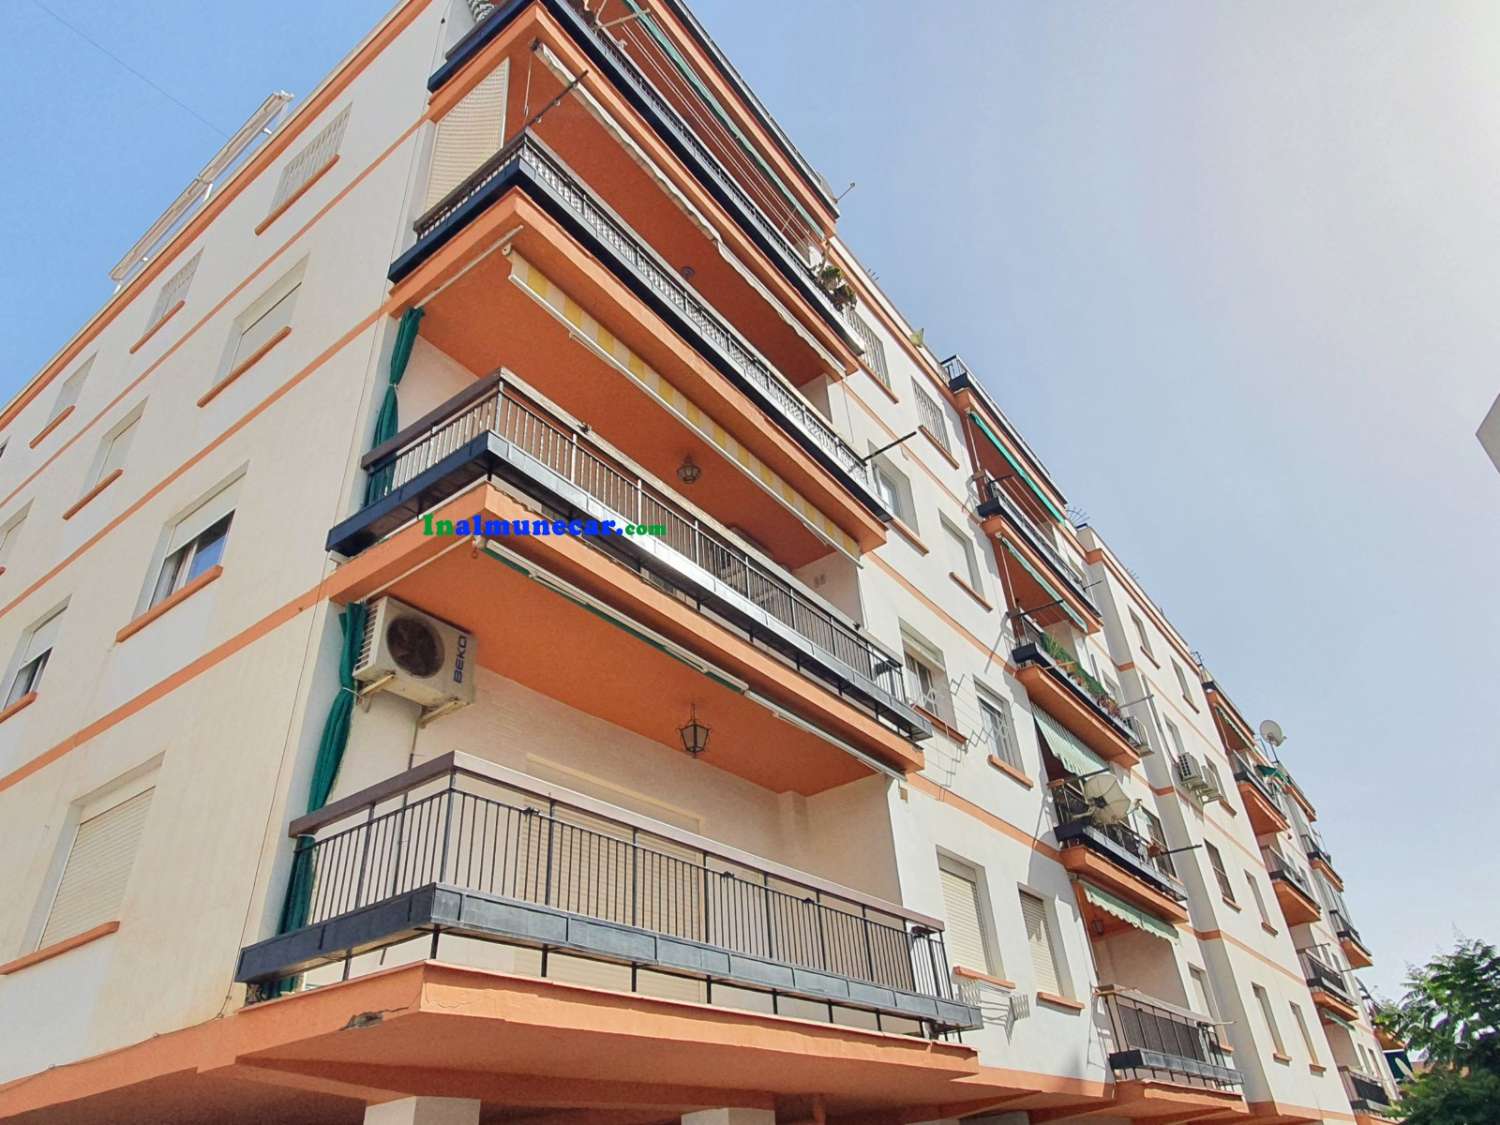 Appartement rénové à vendre à Almuñecar situé sur la 2ème ligne de la plage avec parking communautaire.